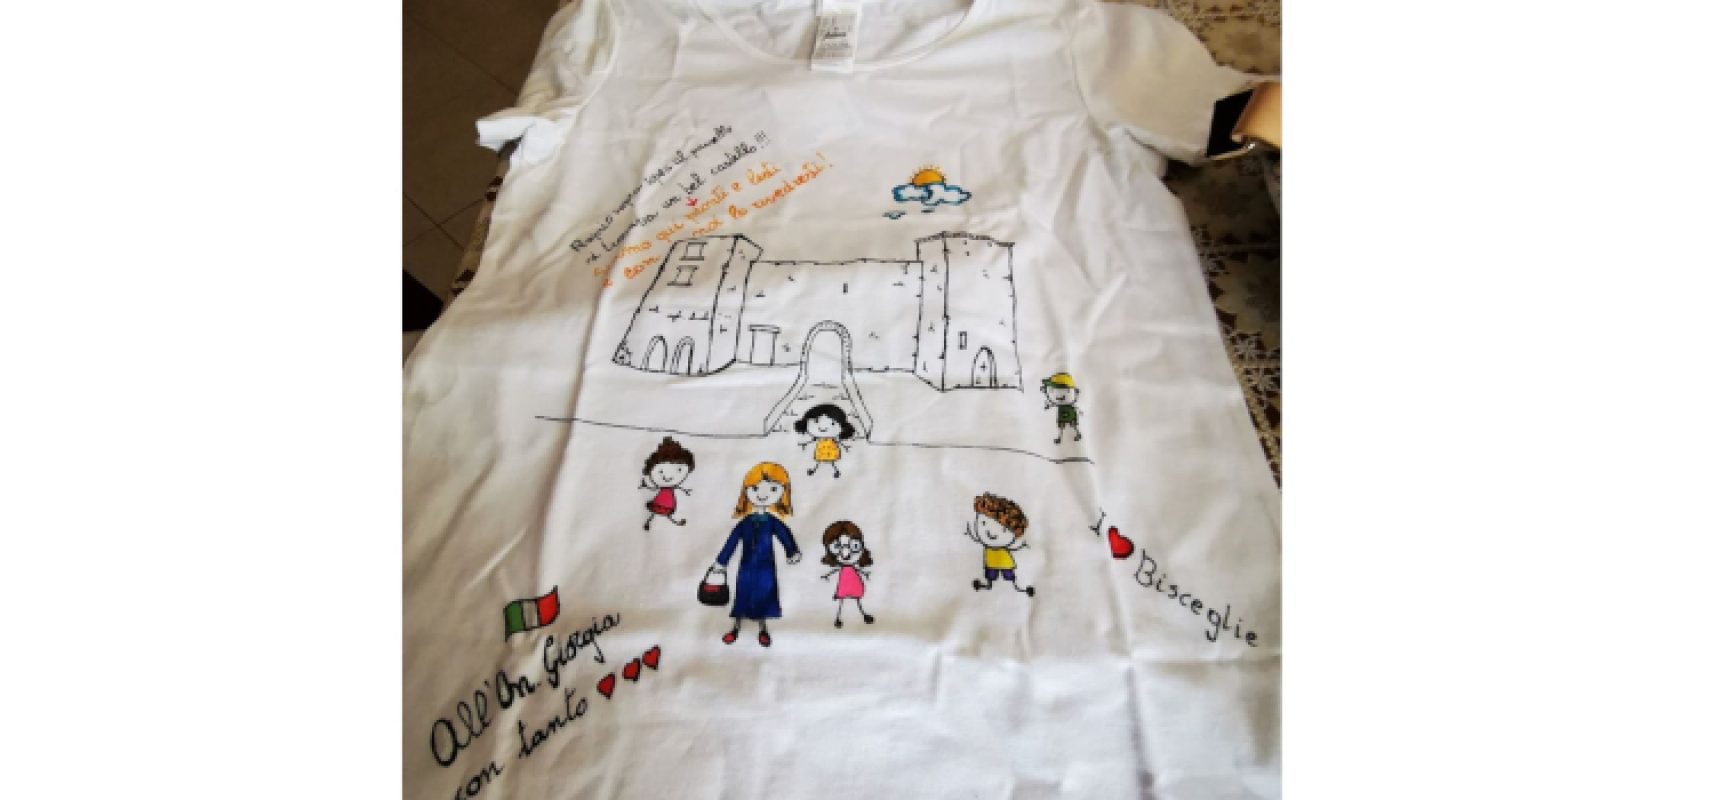 Docenti biscegliesi regalano maglia a Giorgia Meloni, Galantino (FdI): “Storia locale nelle scuole”